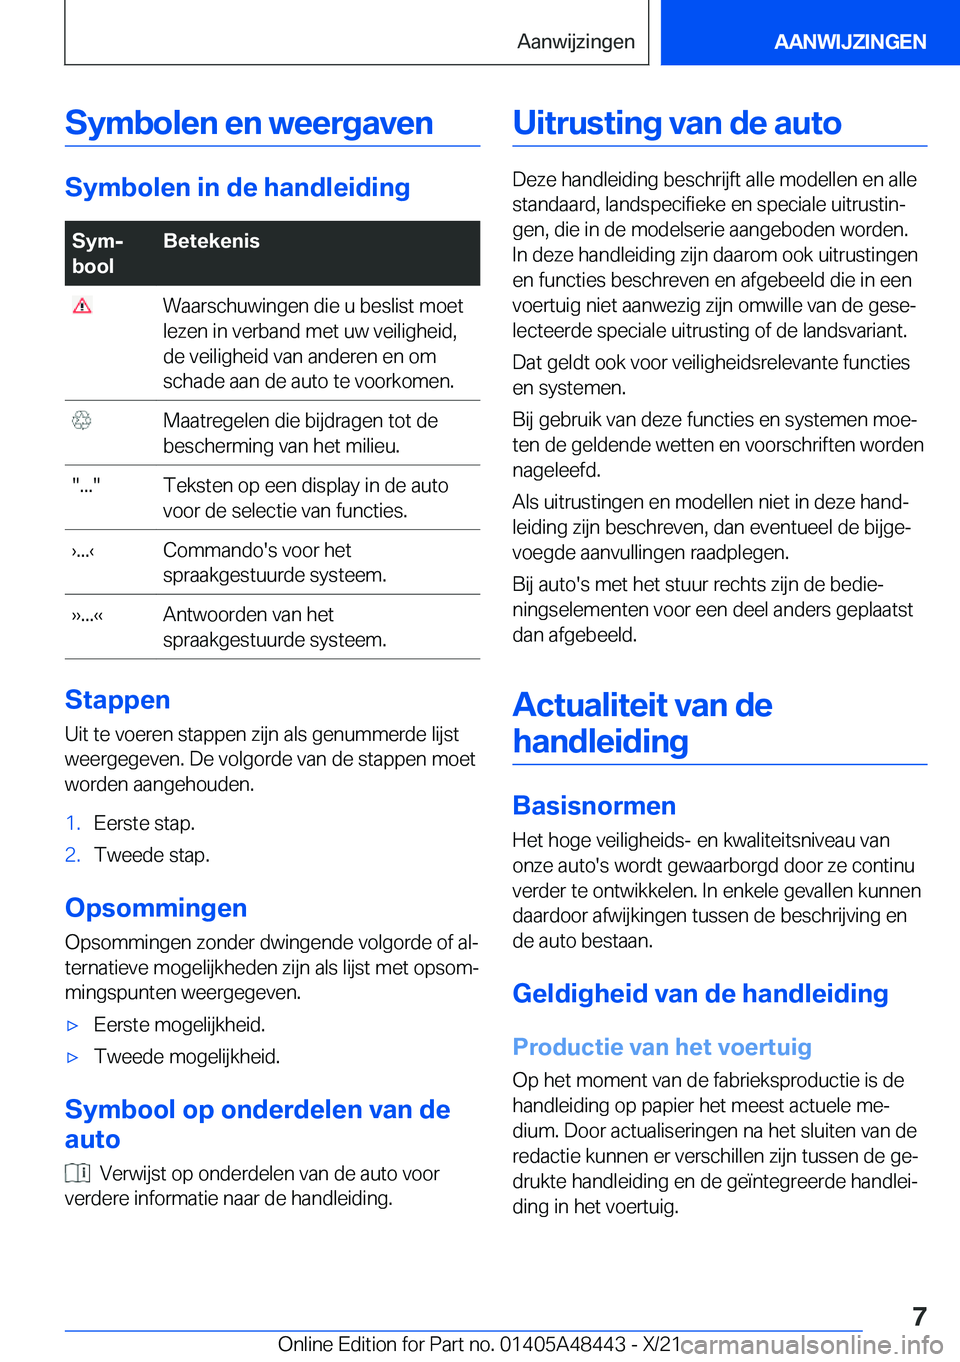 BMW X7 2022  Instructieboekjes (in Dutch) �S�y�m�b�o�l�e�n��e�n��w�e�e�r�g�a�v�e�n
�S�y�m�b�o�l�e�n��i�n��d�e��h�a�n�d�l�e�i�d�i�n�g
�S�y�mj
�b�o�o�l�B�e�t�e�k�e�n�i�s��W�a�a�r�s�c�h�u�w�i�n�g�e�n��d�i�e��u��b�e�s�l�i�s�t��m�o�e�t
